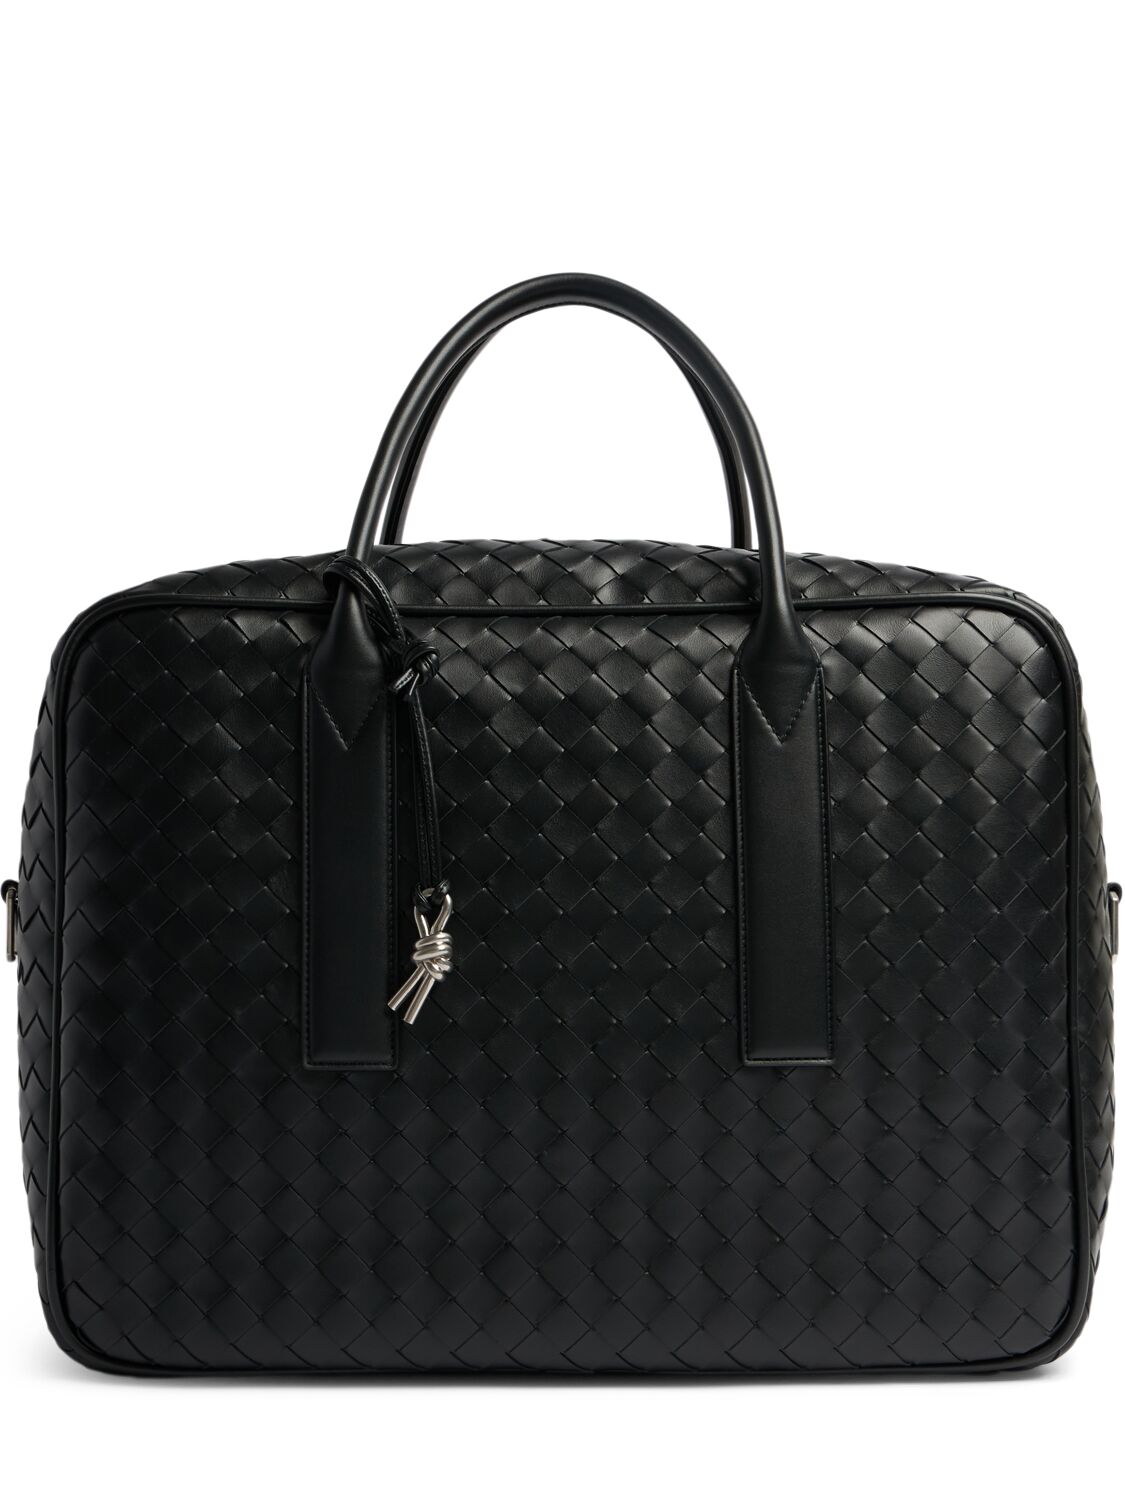 Image of Getaway Medium Leather Weekender Bag